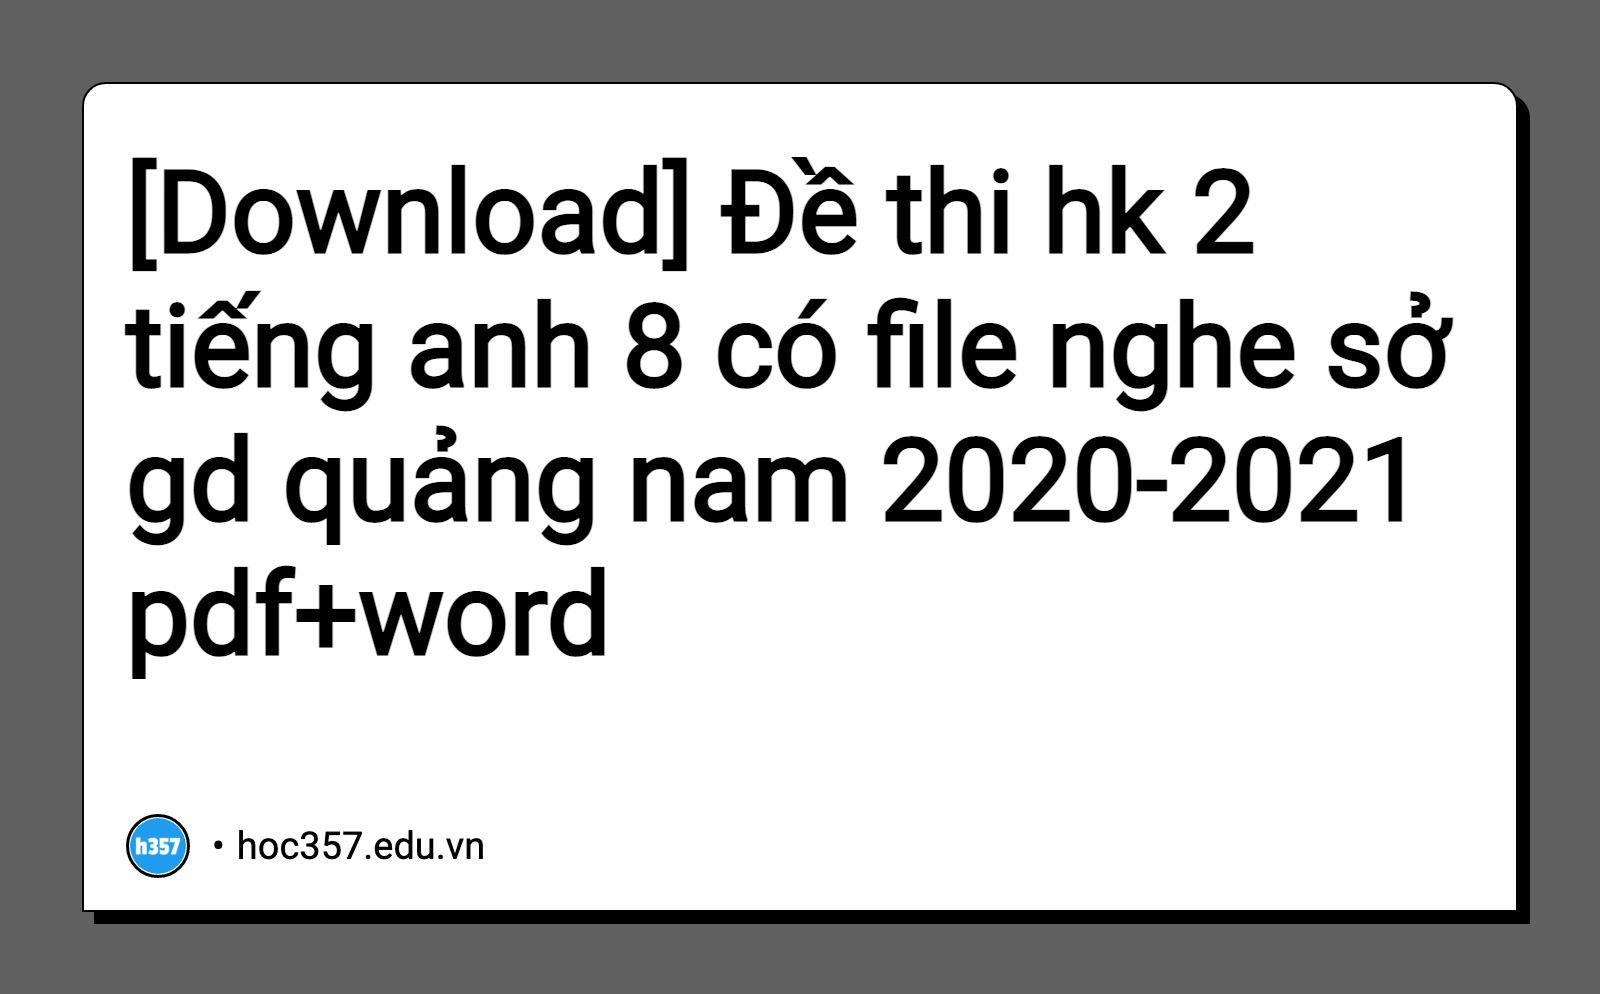 Hình minh họa Đề thi hk 2 tiếng anh 8 có file nghe sở gd quảng nam 2020-2021